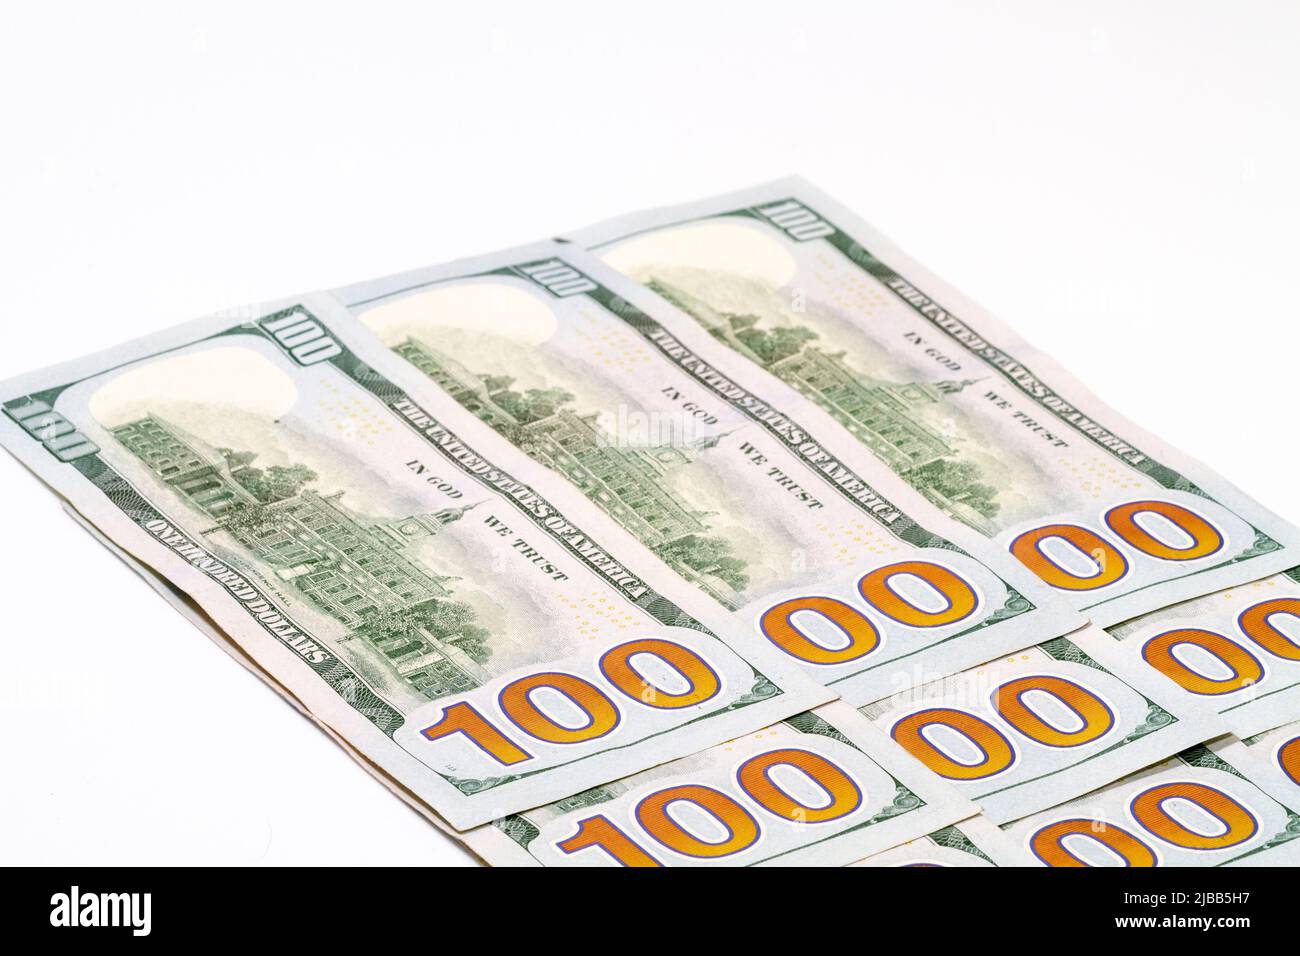 Angolati uno e zeri sul retro di un mazzo di Stati Uniti d'America cento dollari banconote in valuta. Con lo spazio di copia in alto a sinistra. Foto Stock